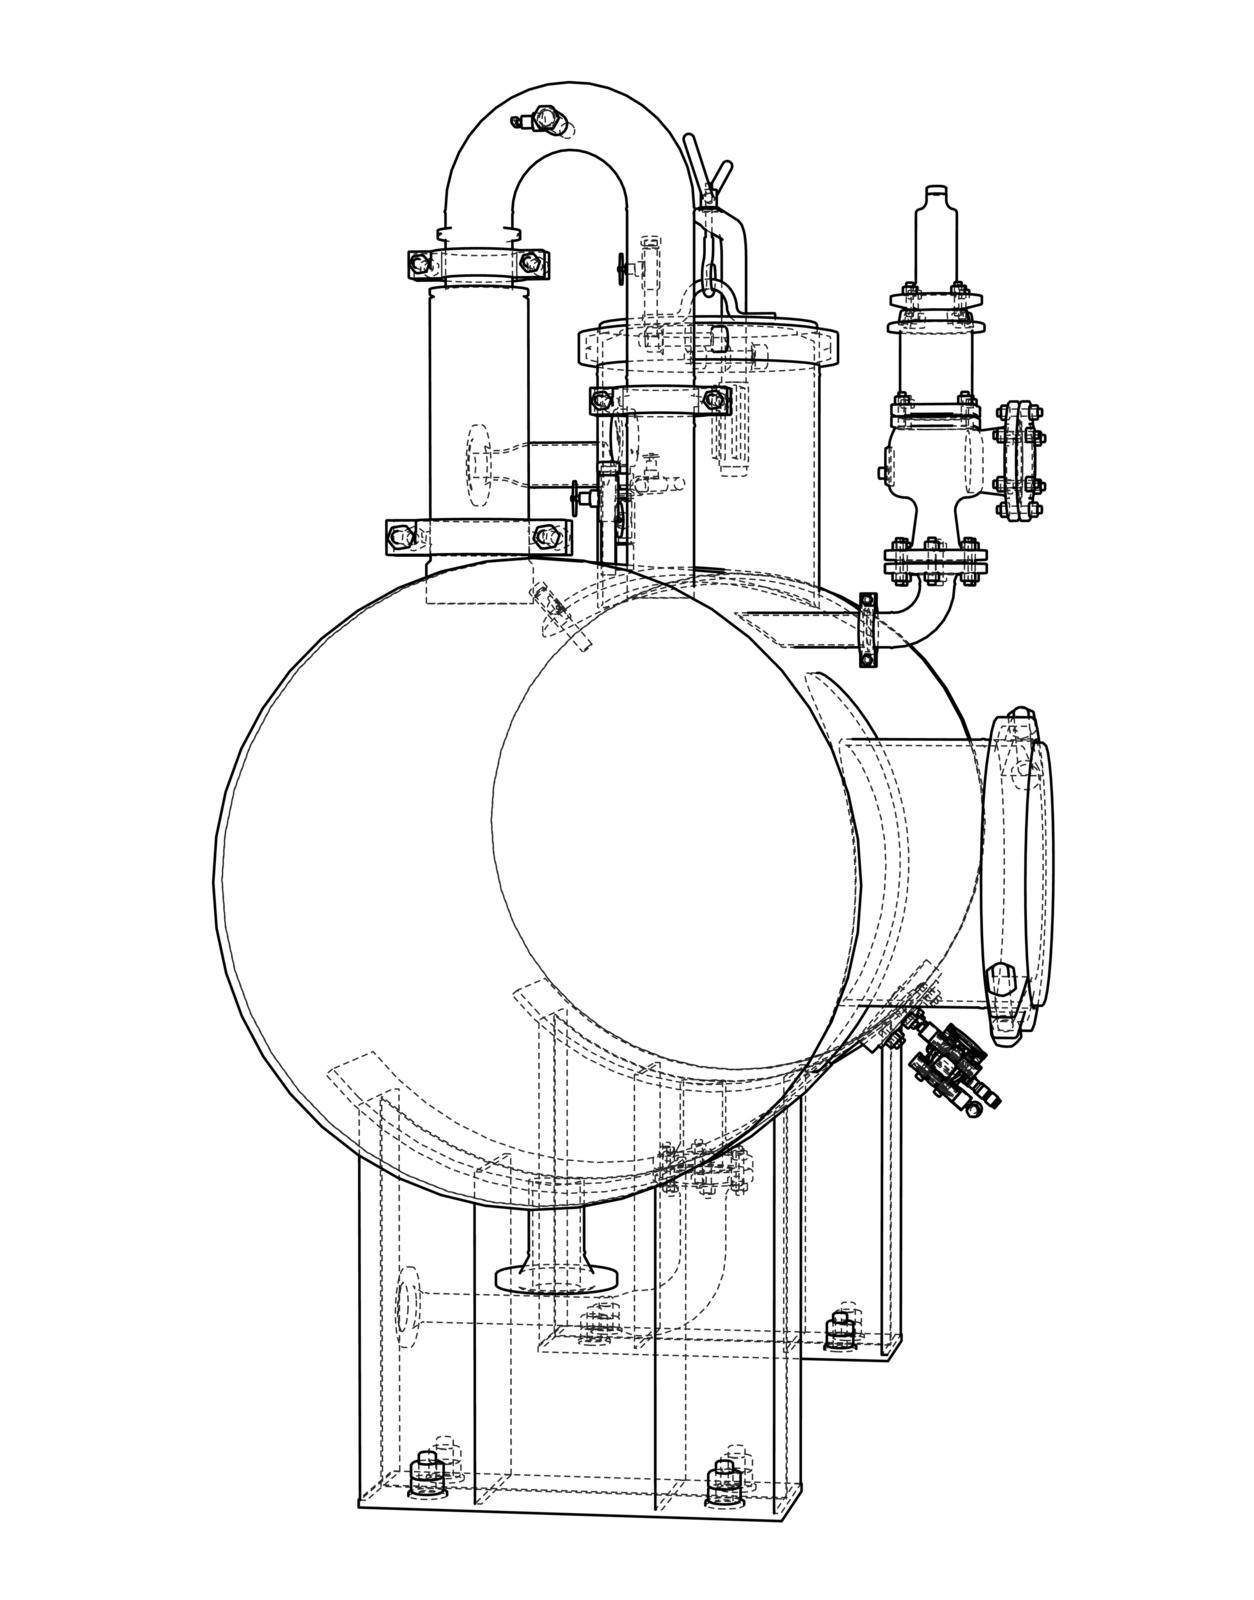 Sketch industrial equipment. EPS 10 vector format. Vector rendering of 3d